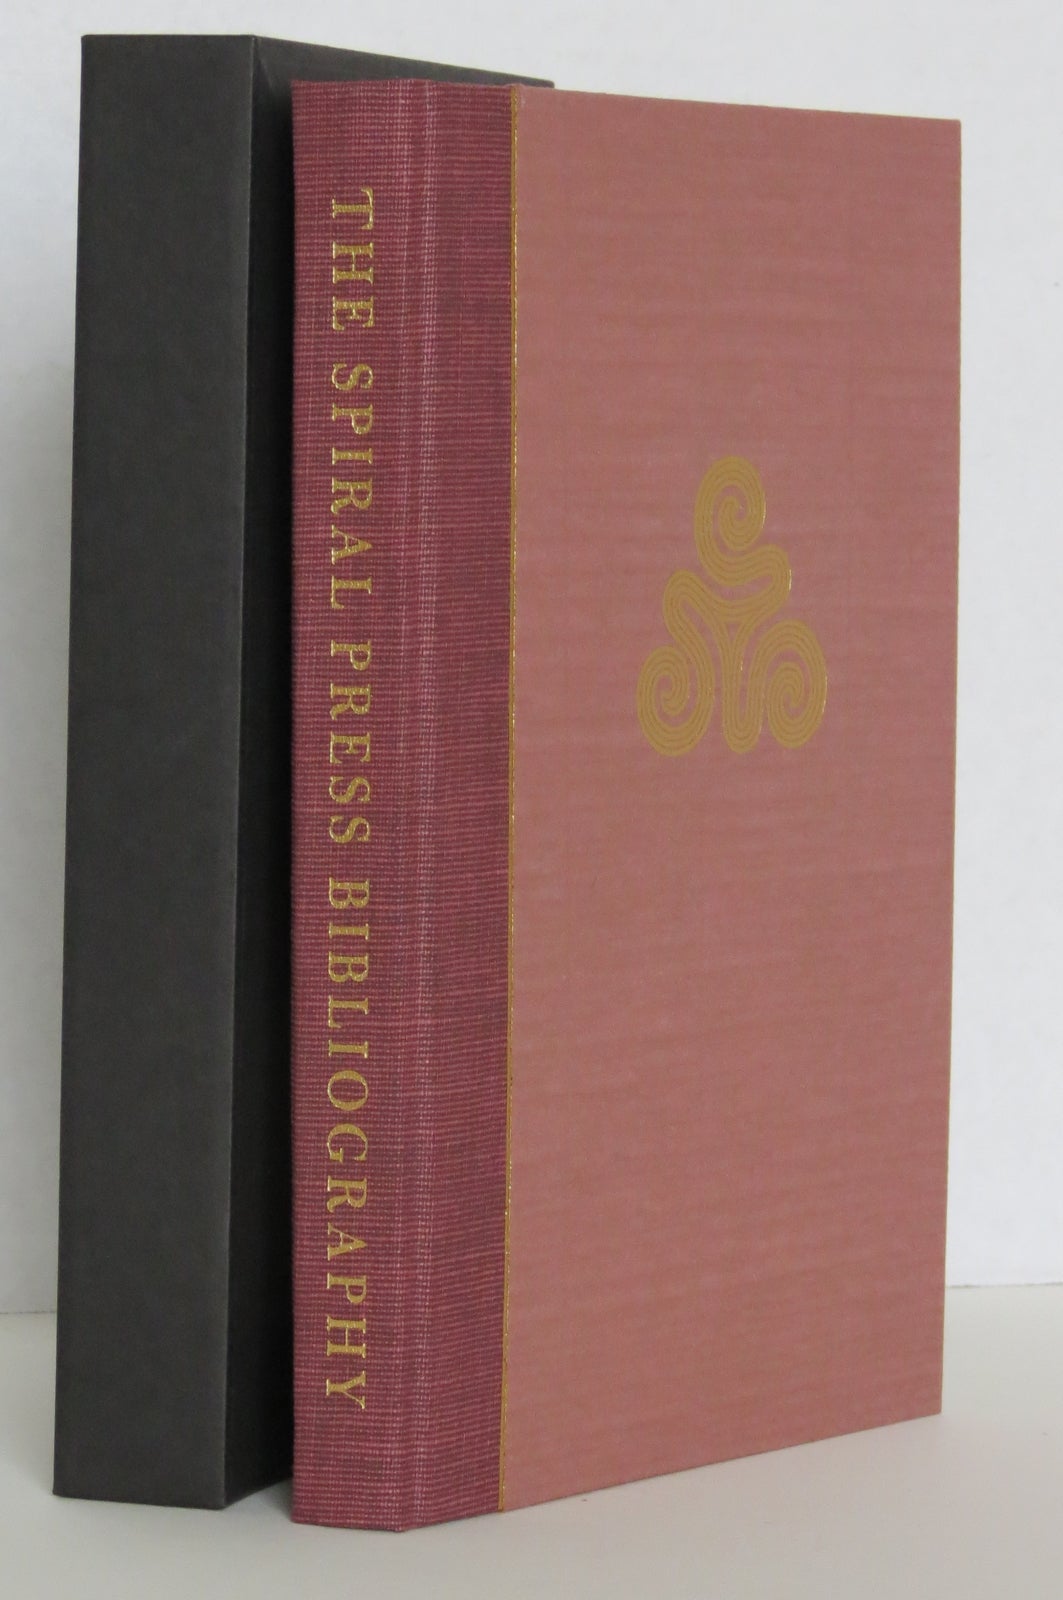 THE SPIRAL PRESS, 1926-1971: A Bibliographical Checklist. Philip N. Cronenwett